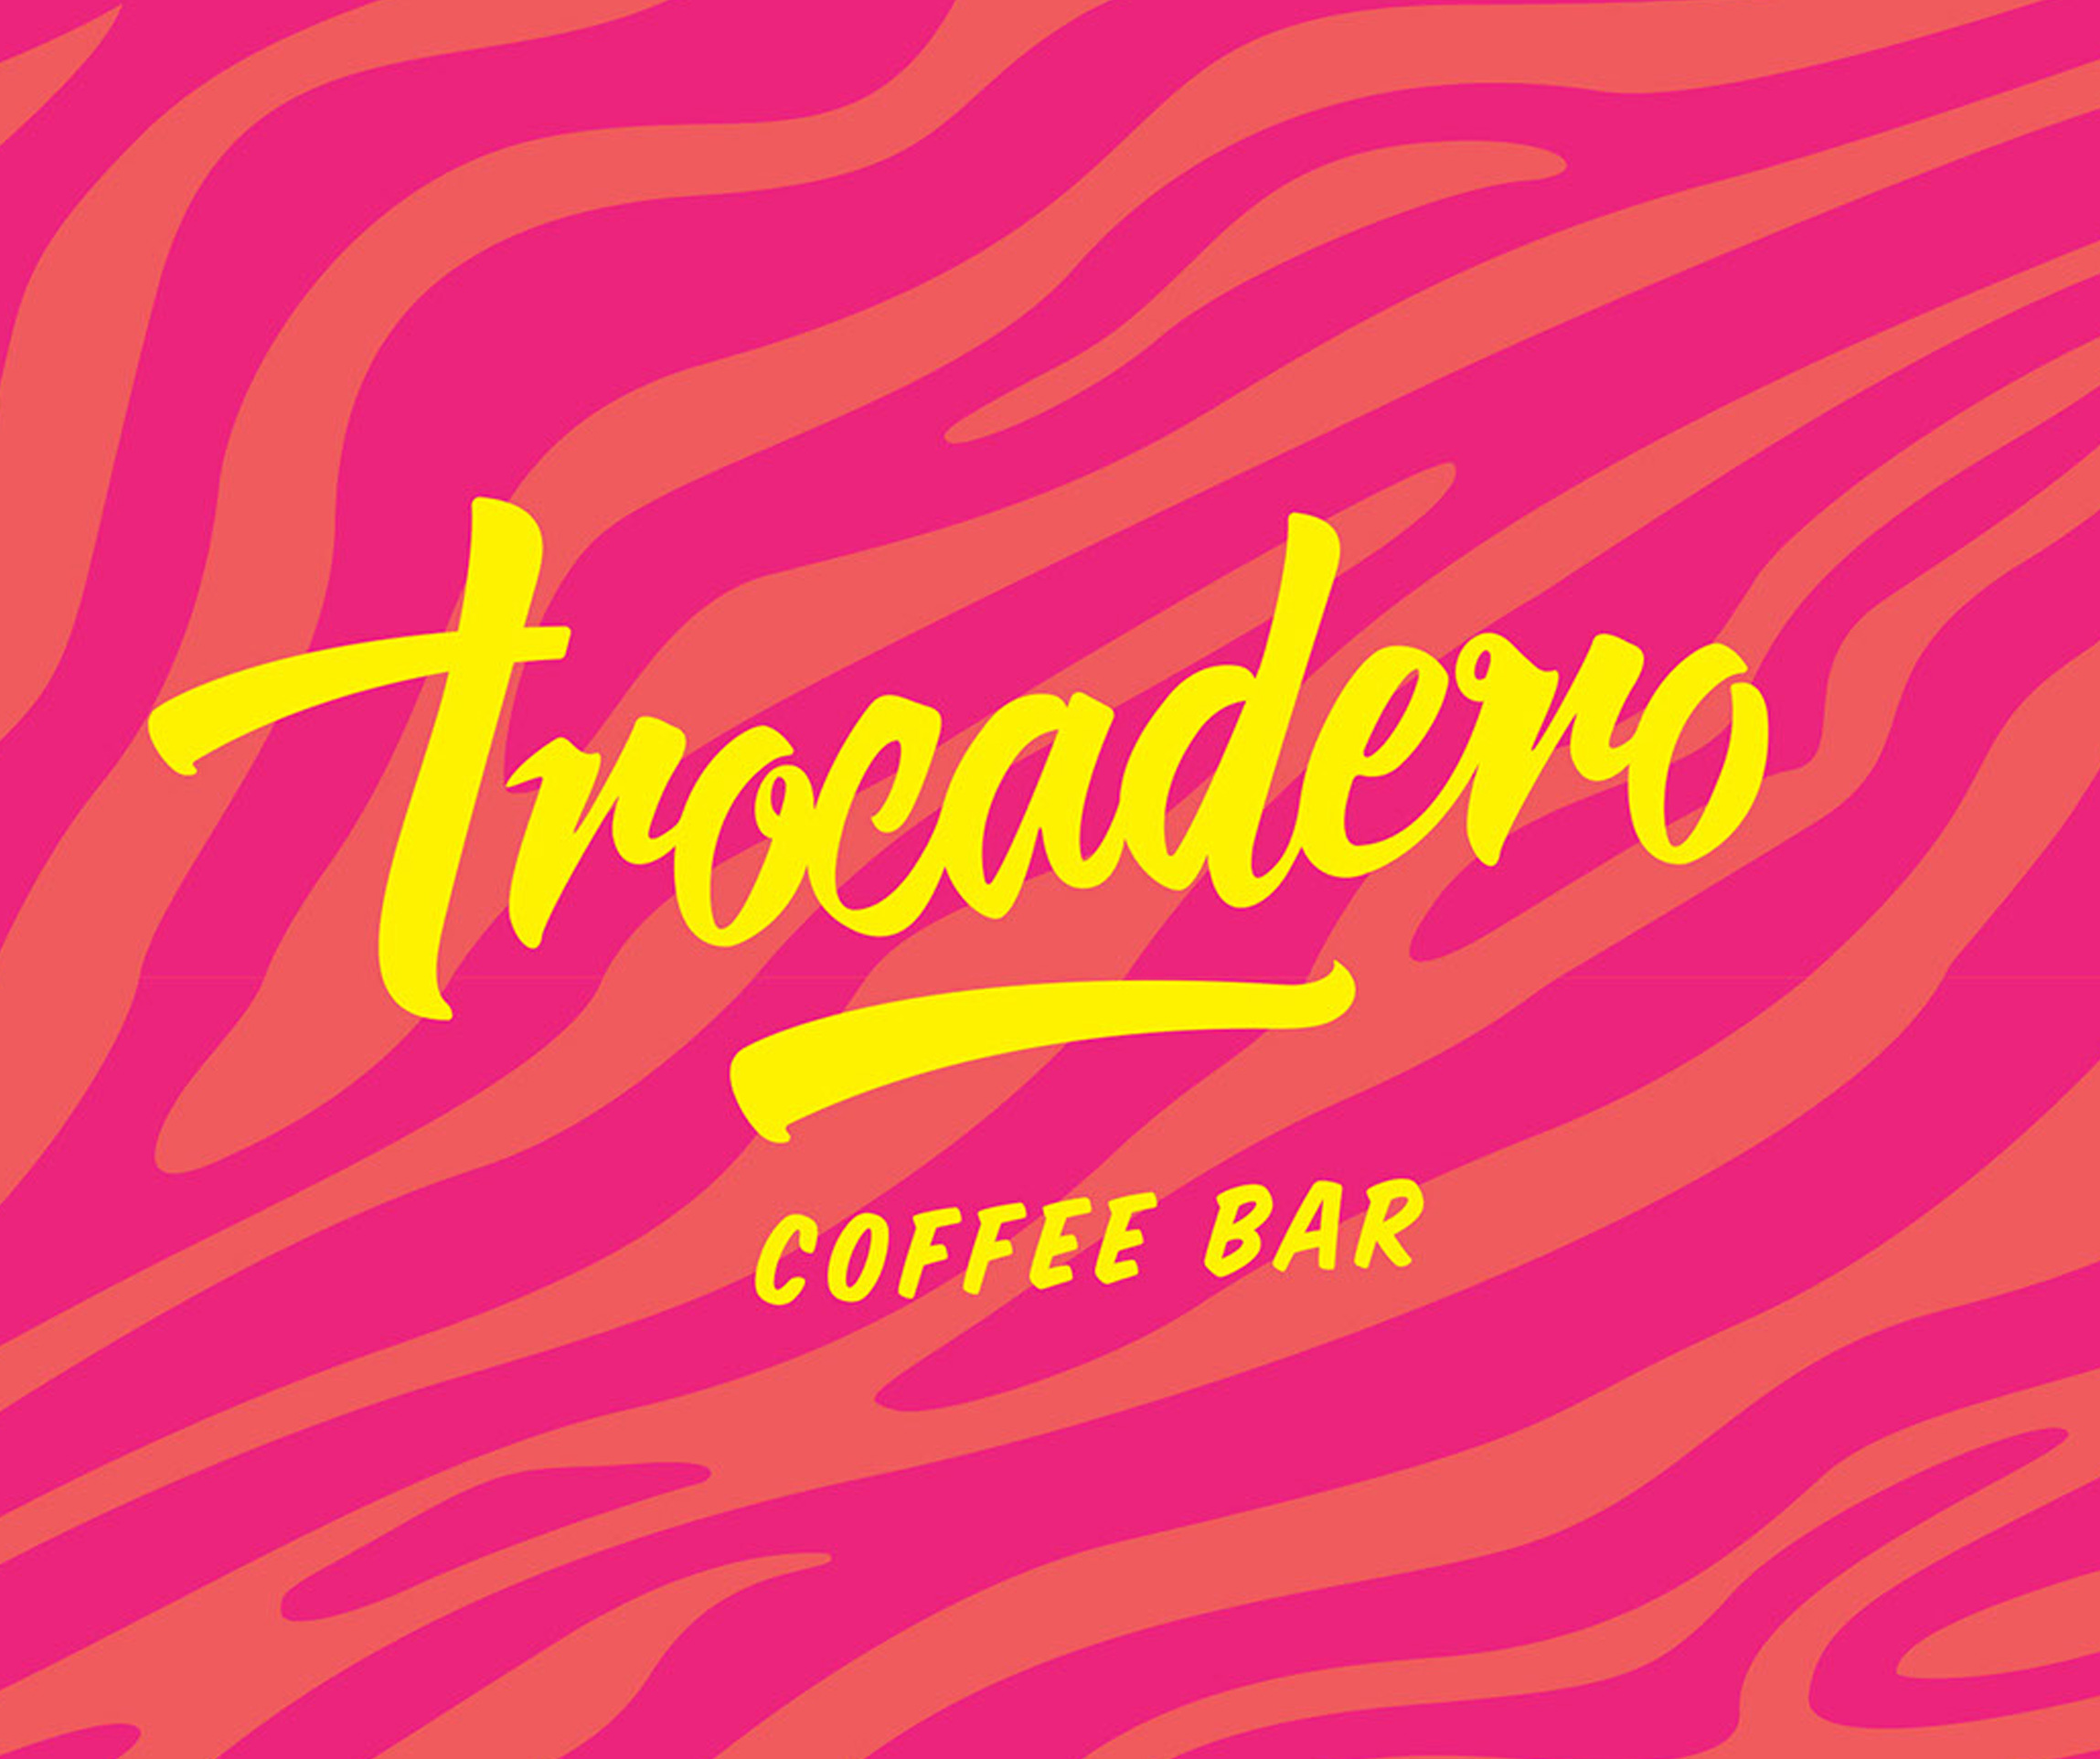 Trocadero Coffee Bar creative delights